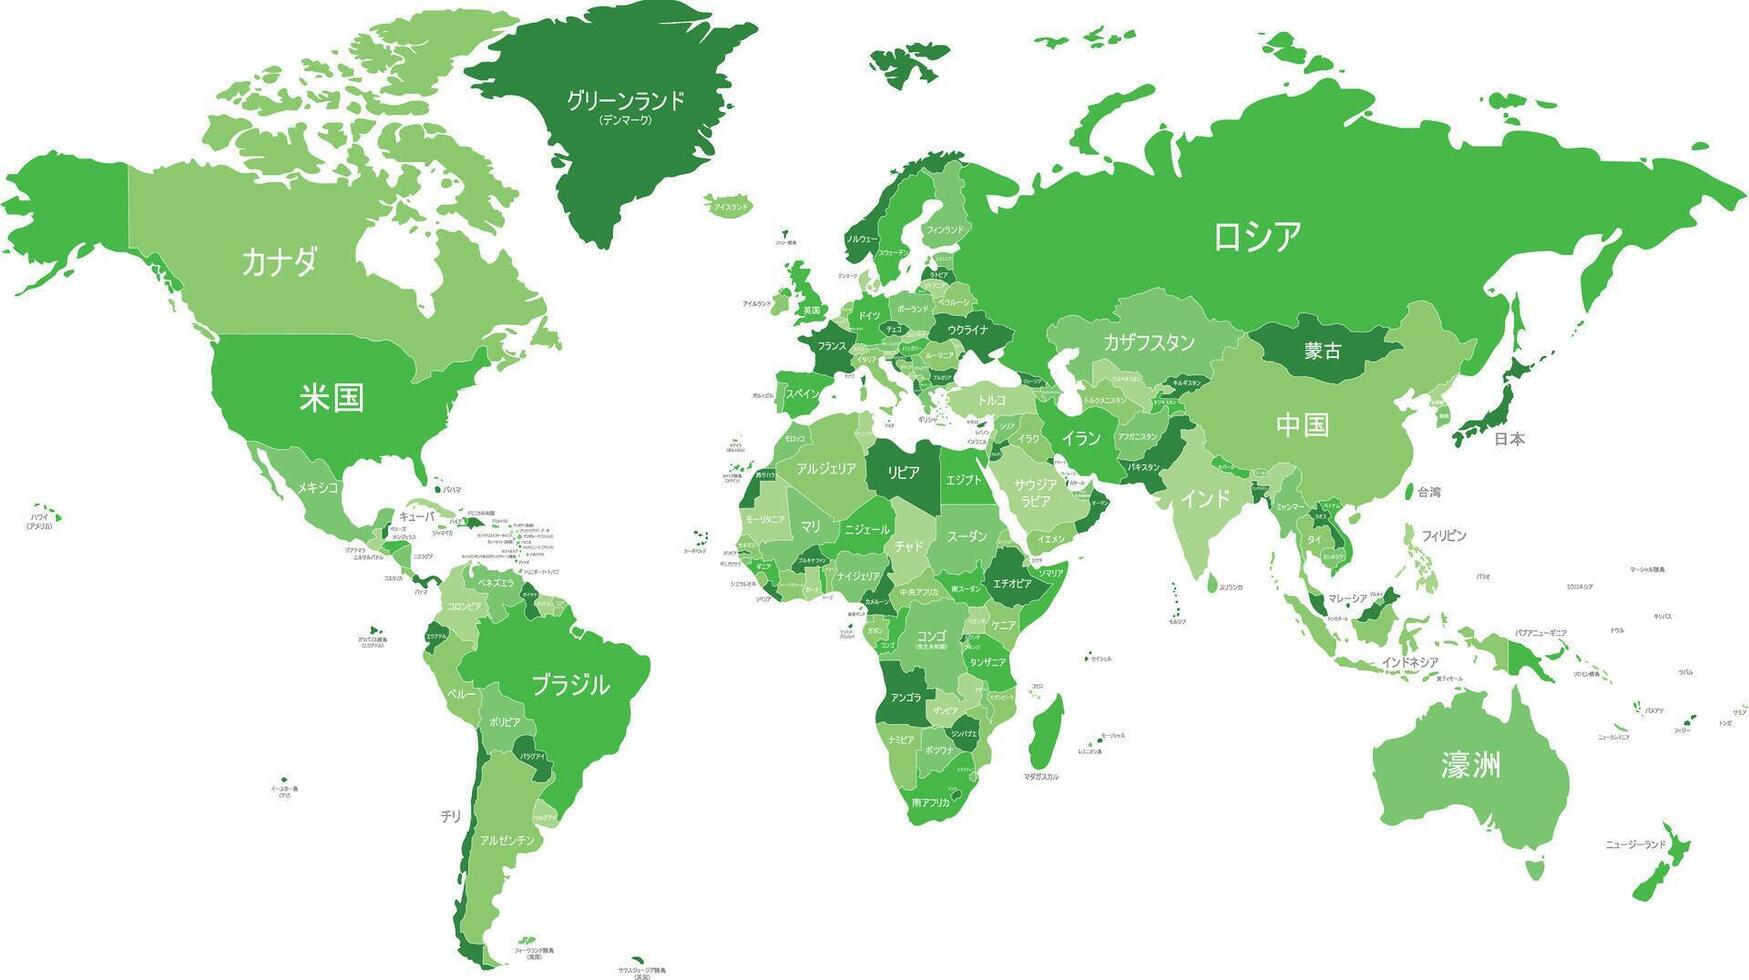 politiek wereld kaart vector illustratie met verschillend tonen van groen voor elk land en land namen in Japans. bewerkbare en duidelijk gelabeld lagen.